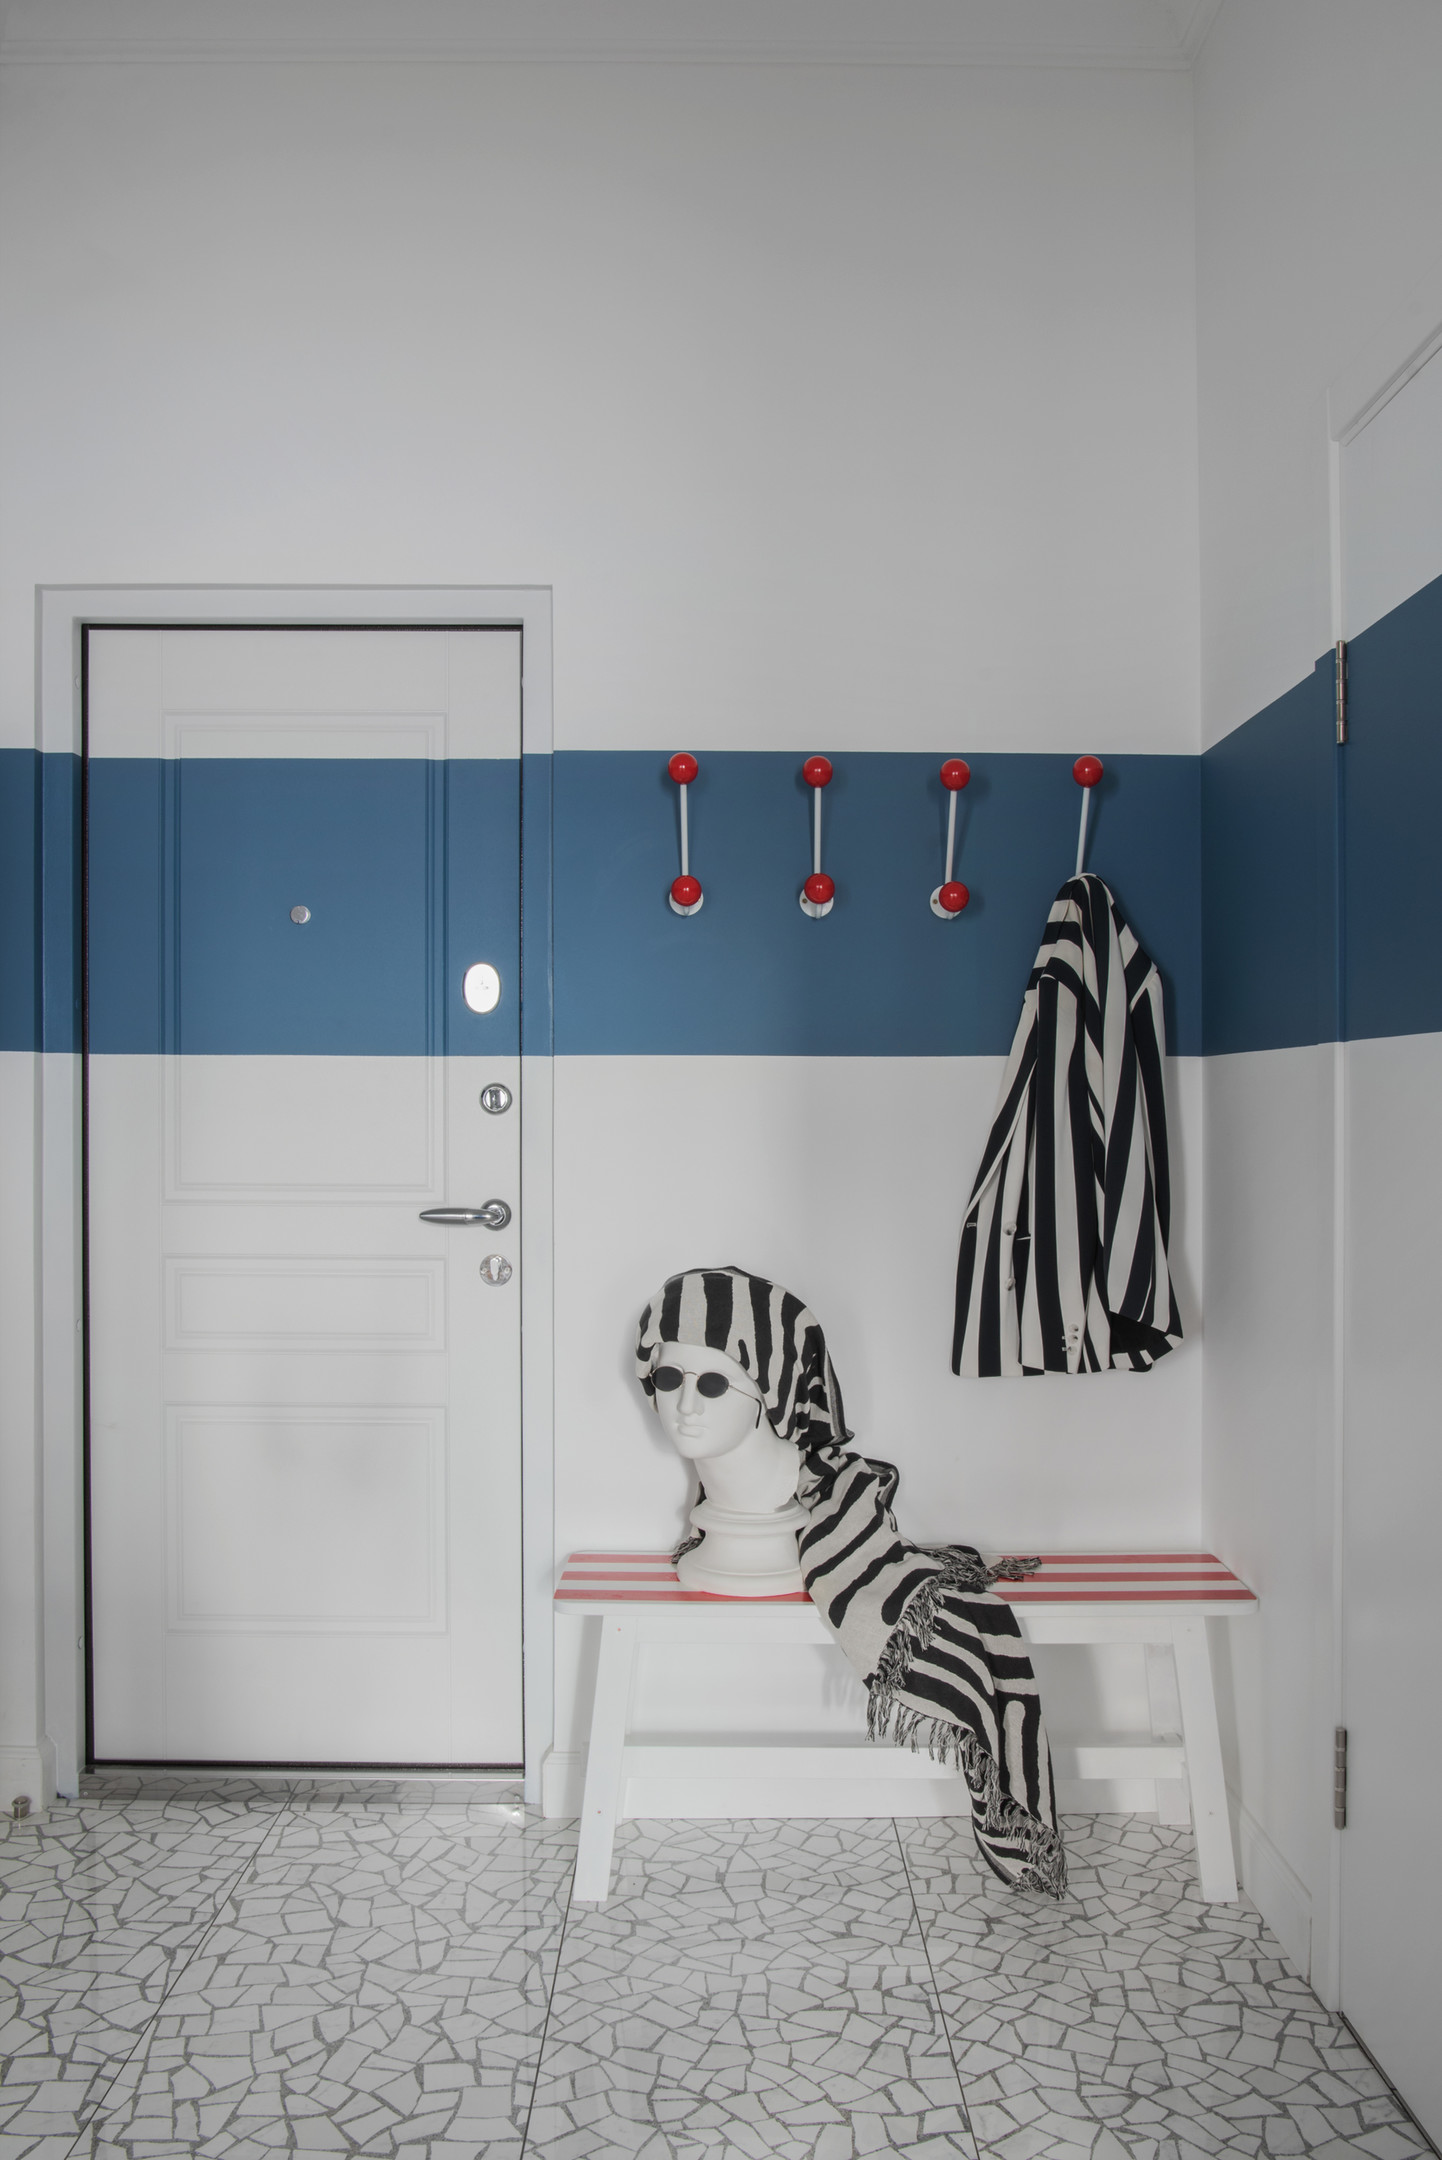 Lối vào căn hộ sử dụng màu xanh lam đậm và trắng để sơn tường, sàn lát đá ấn tượng, thêm vào băng ghế dài từ thương hiệu IKEA được NTK sơn lại những sọc kẻ trắng - hồng. Chiếc áo khoác và khăn choàng họa tiết ngựa vằn trông chất cực kỳ!